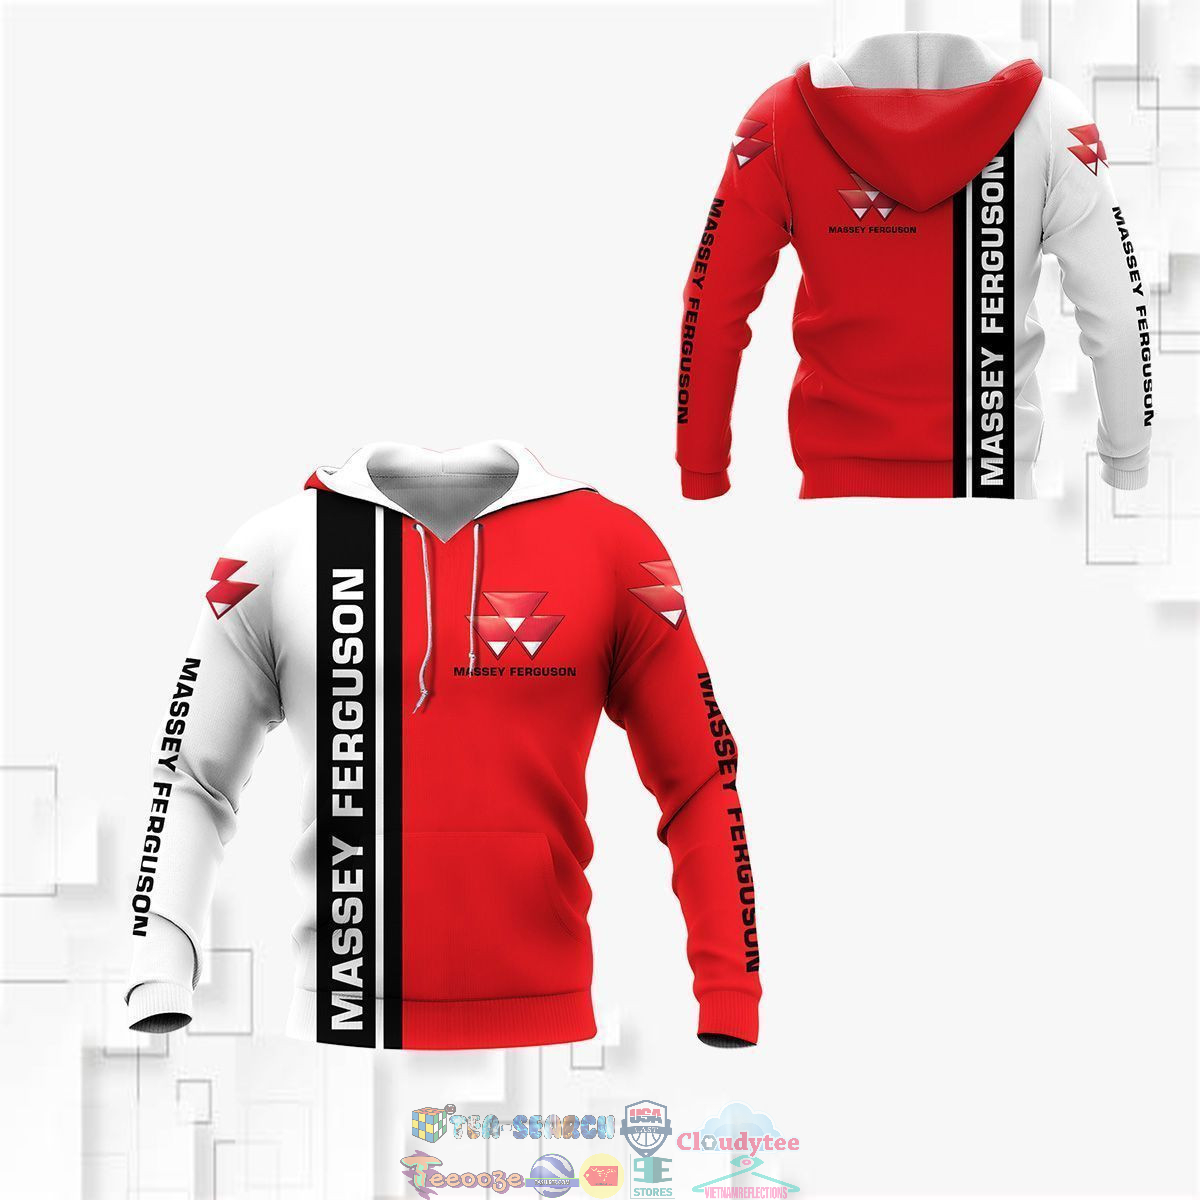 Massey Ferguson ver 8 3D hoodie and t-shirt – Saleoff